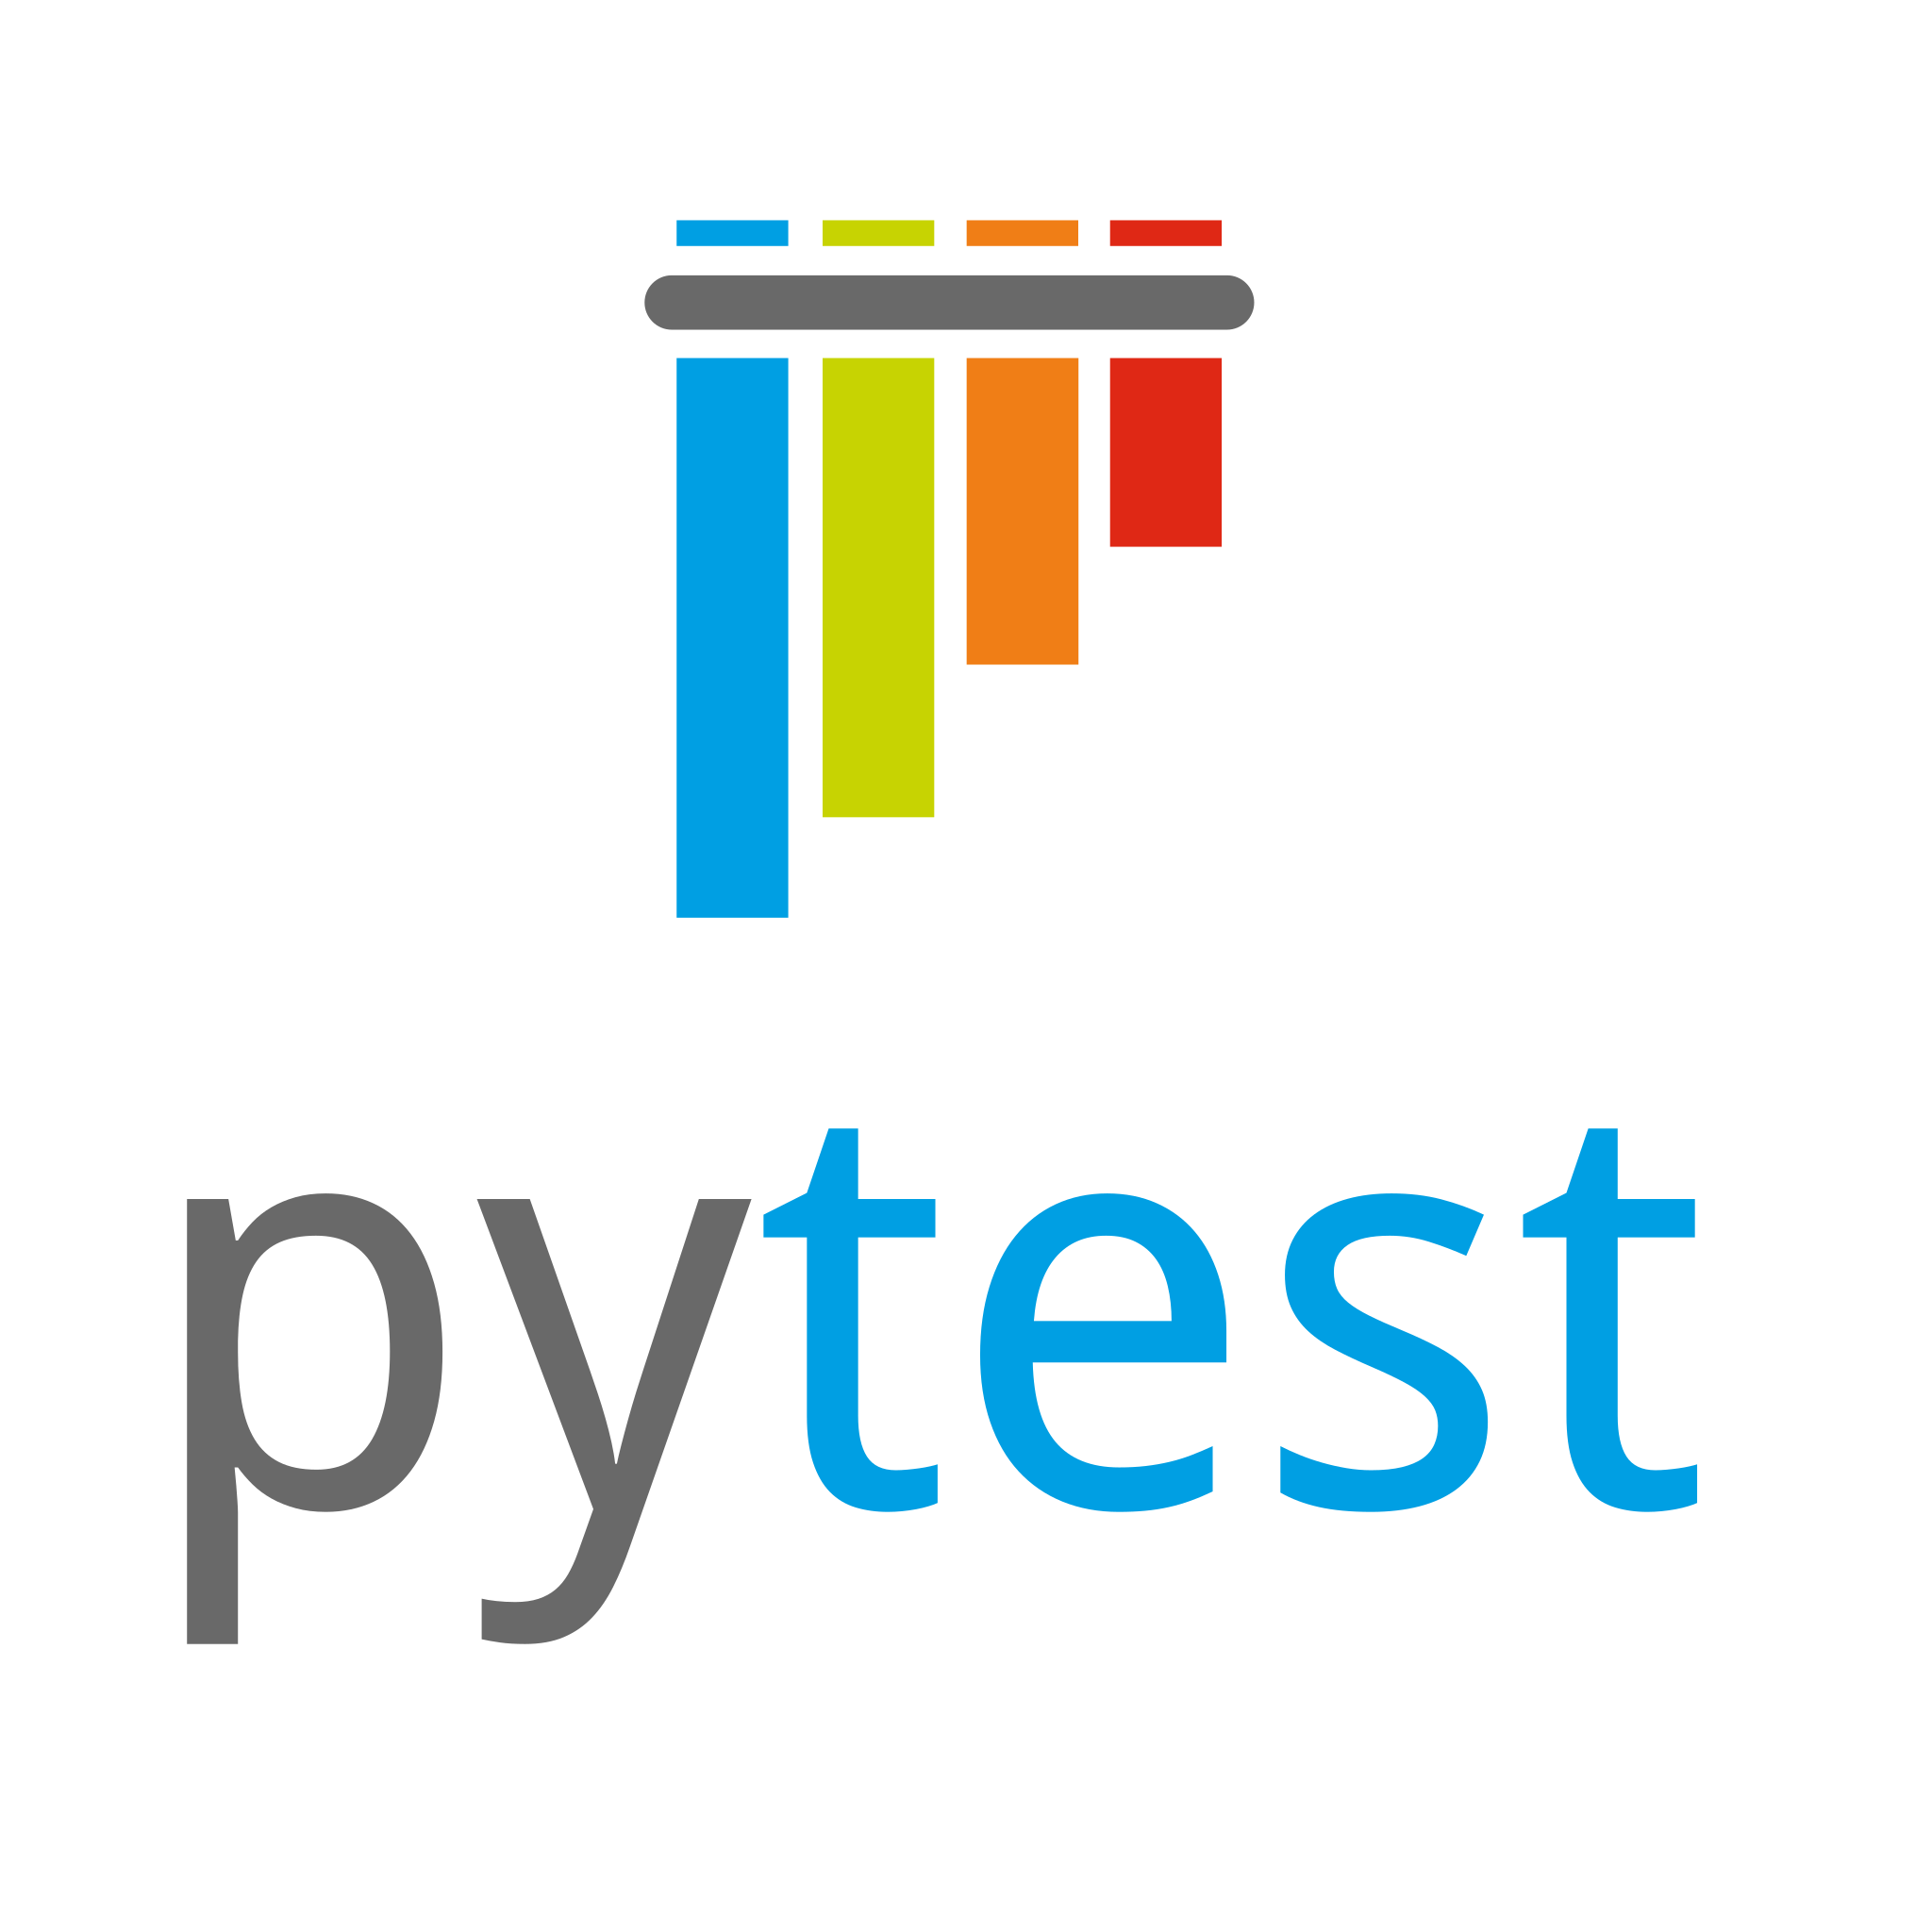 Image of the Pytest logo